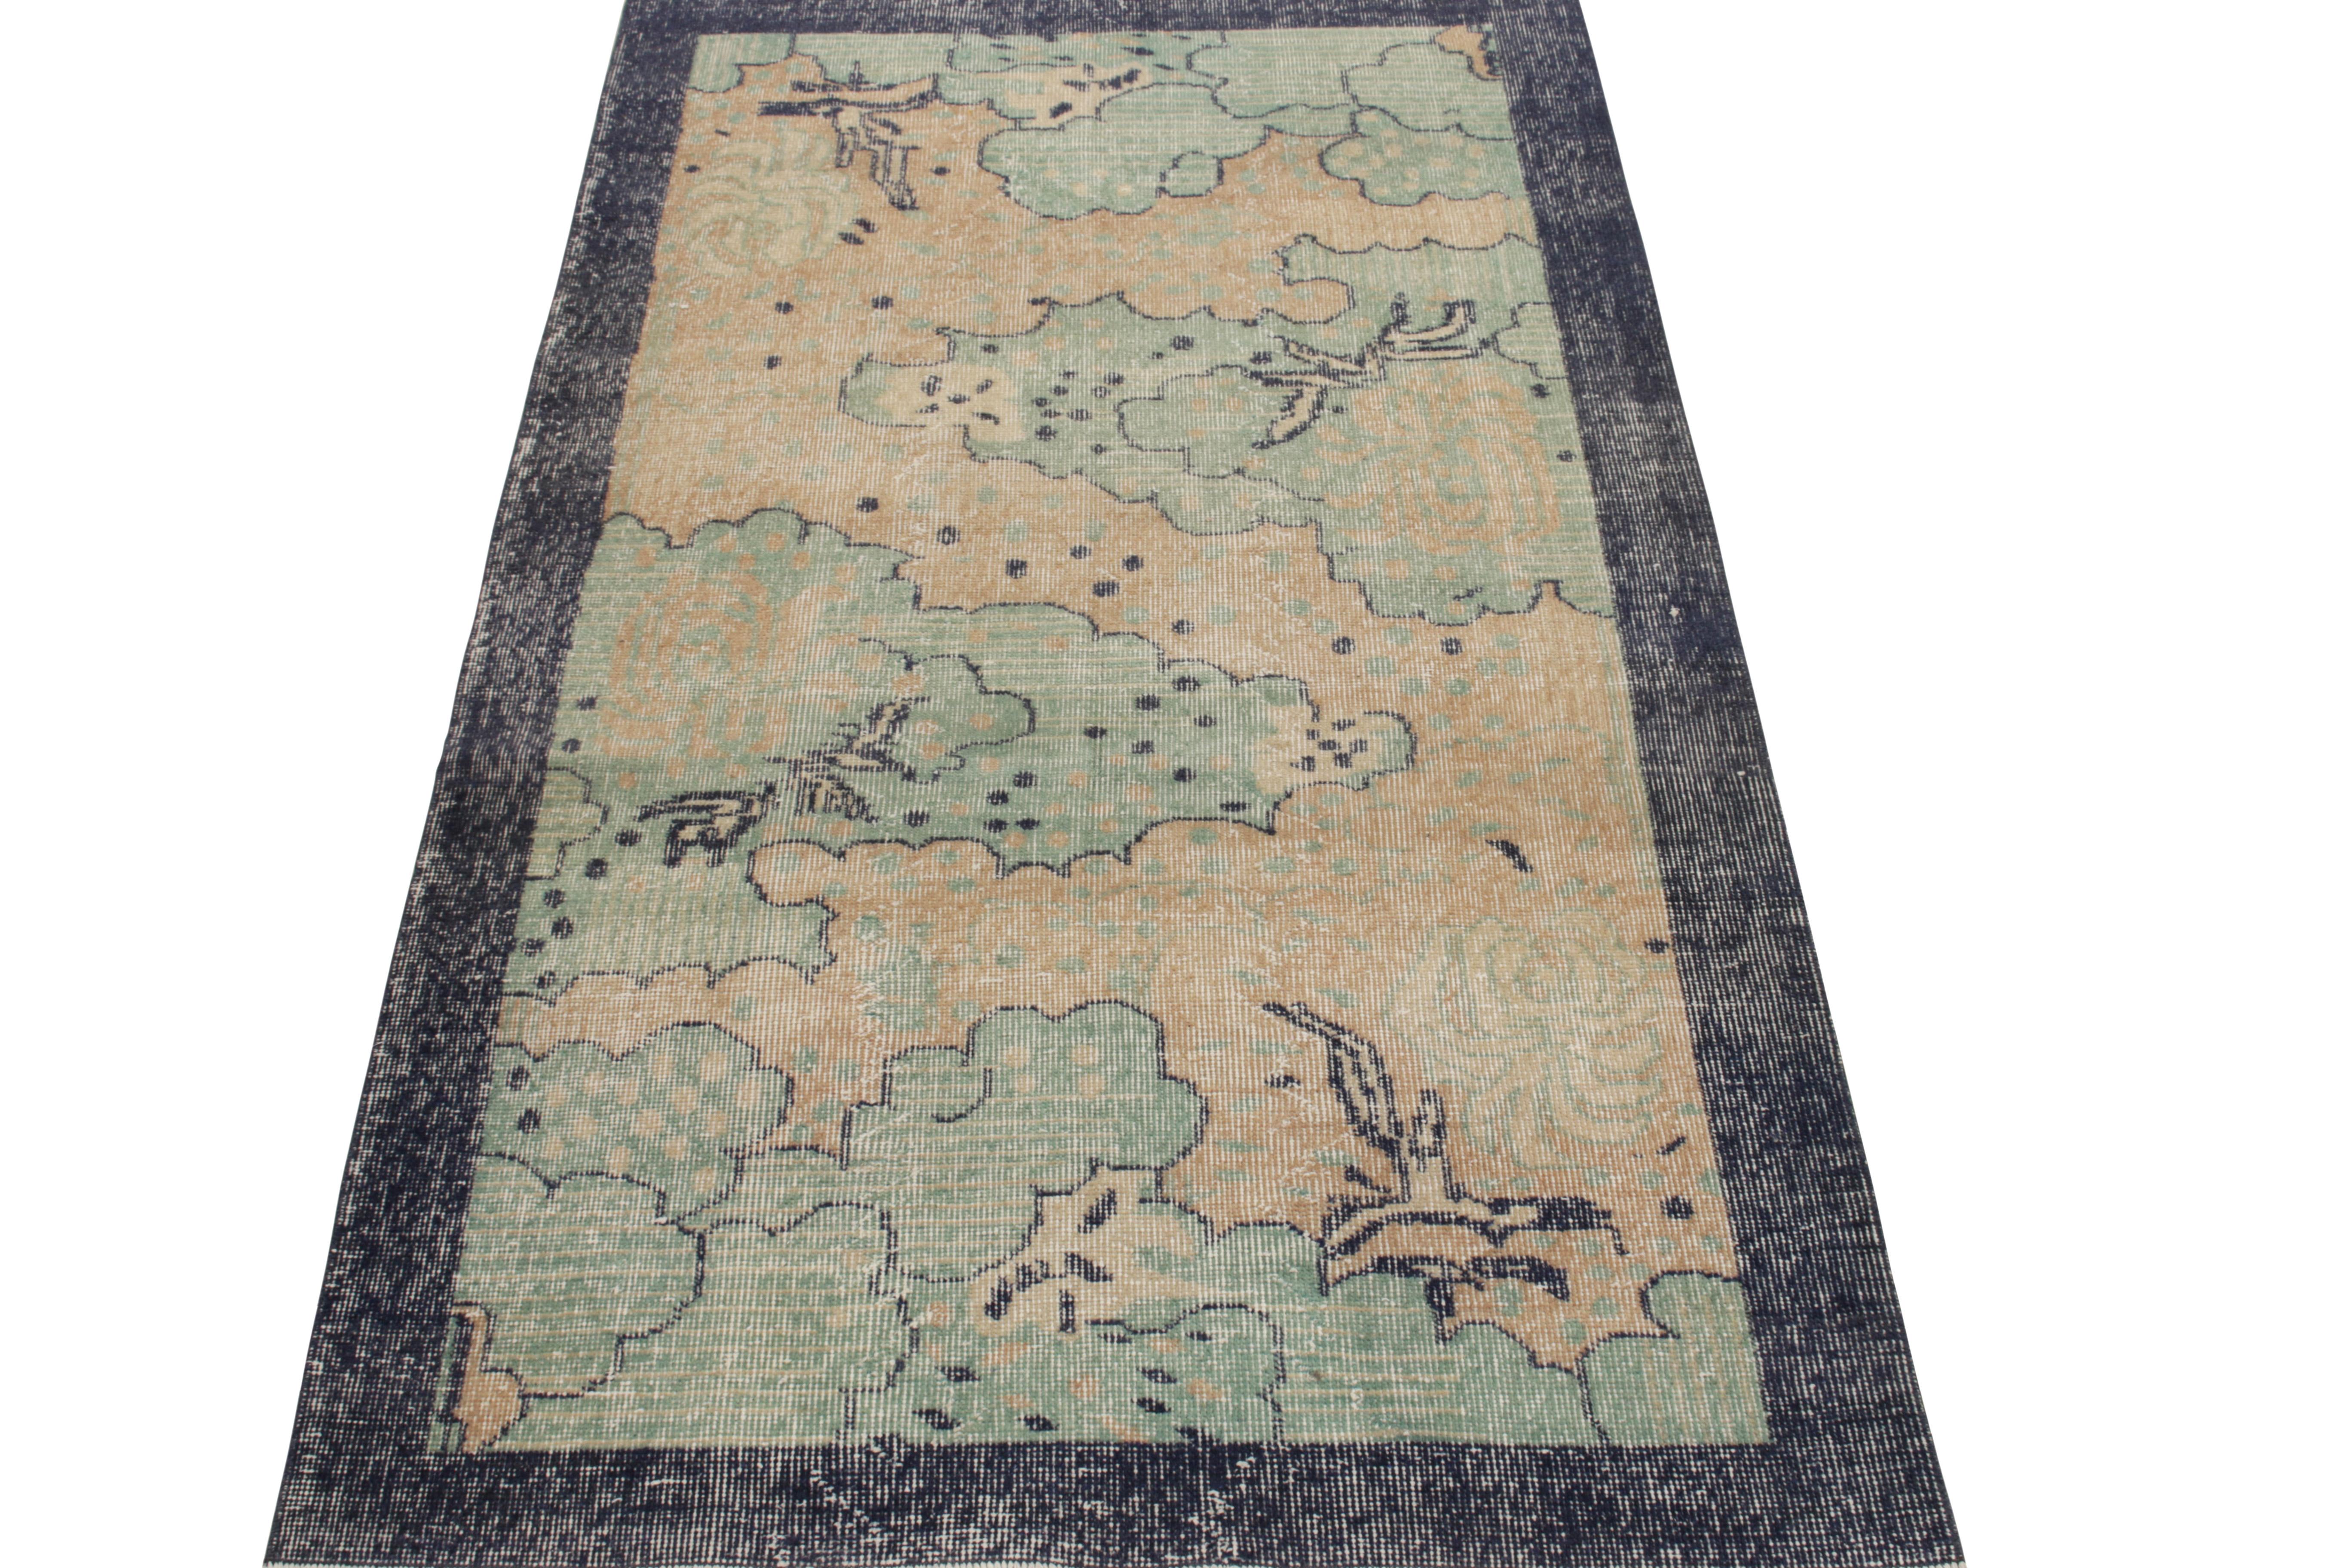 Dieser handgeknüpfte Teppich mit niedrigem, geschorenem Wollflor aus der Türkei (ca. 1960-1970) ist ein klassischer 4x7 Art-Déco-Teppich von ikonischer Herkunft aus der Mid-Century Pasha Collection von Rug & Kilim. Zur Erinnerung an die gesammelten